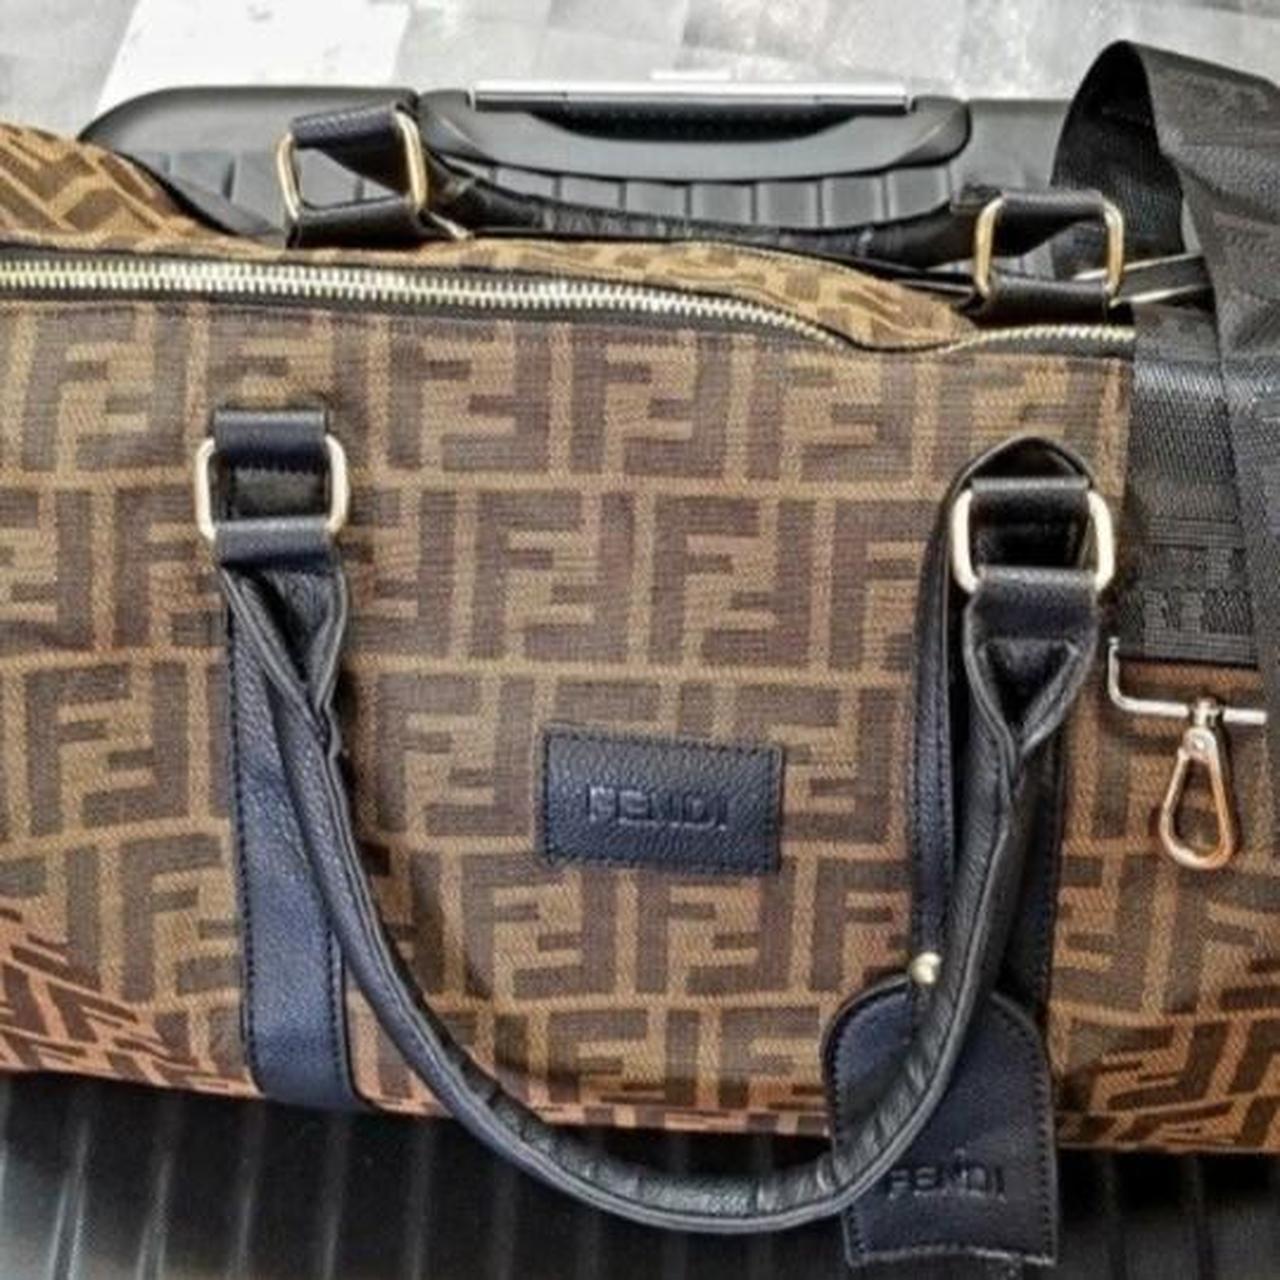 Mid size travel bag - Depop